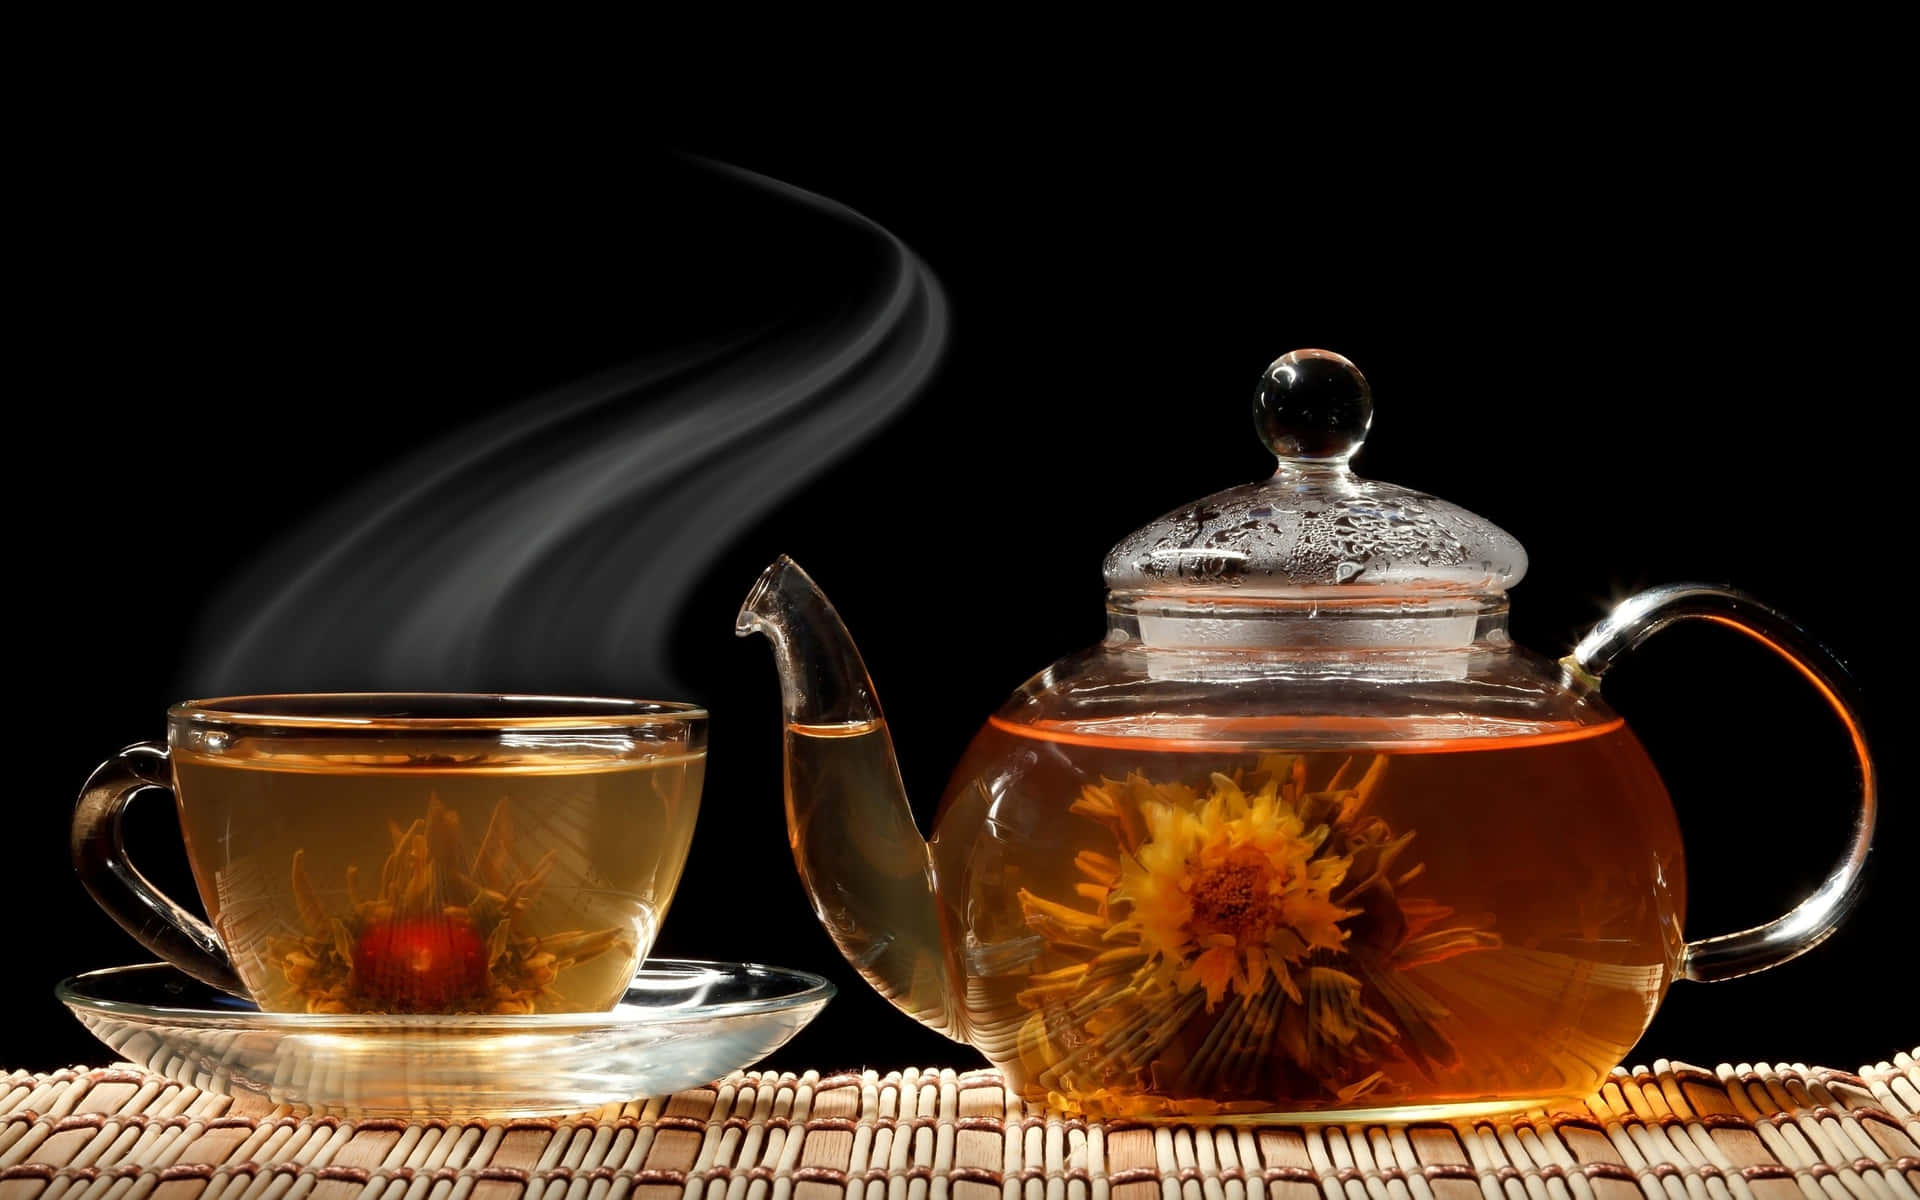 Teetasseund Teekessel Auf Einem Dunklen Bild